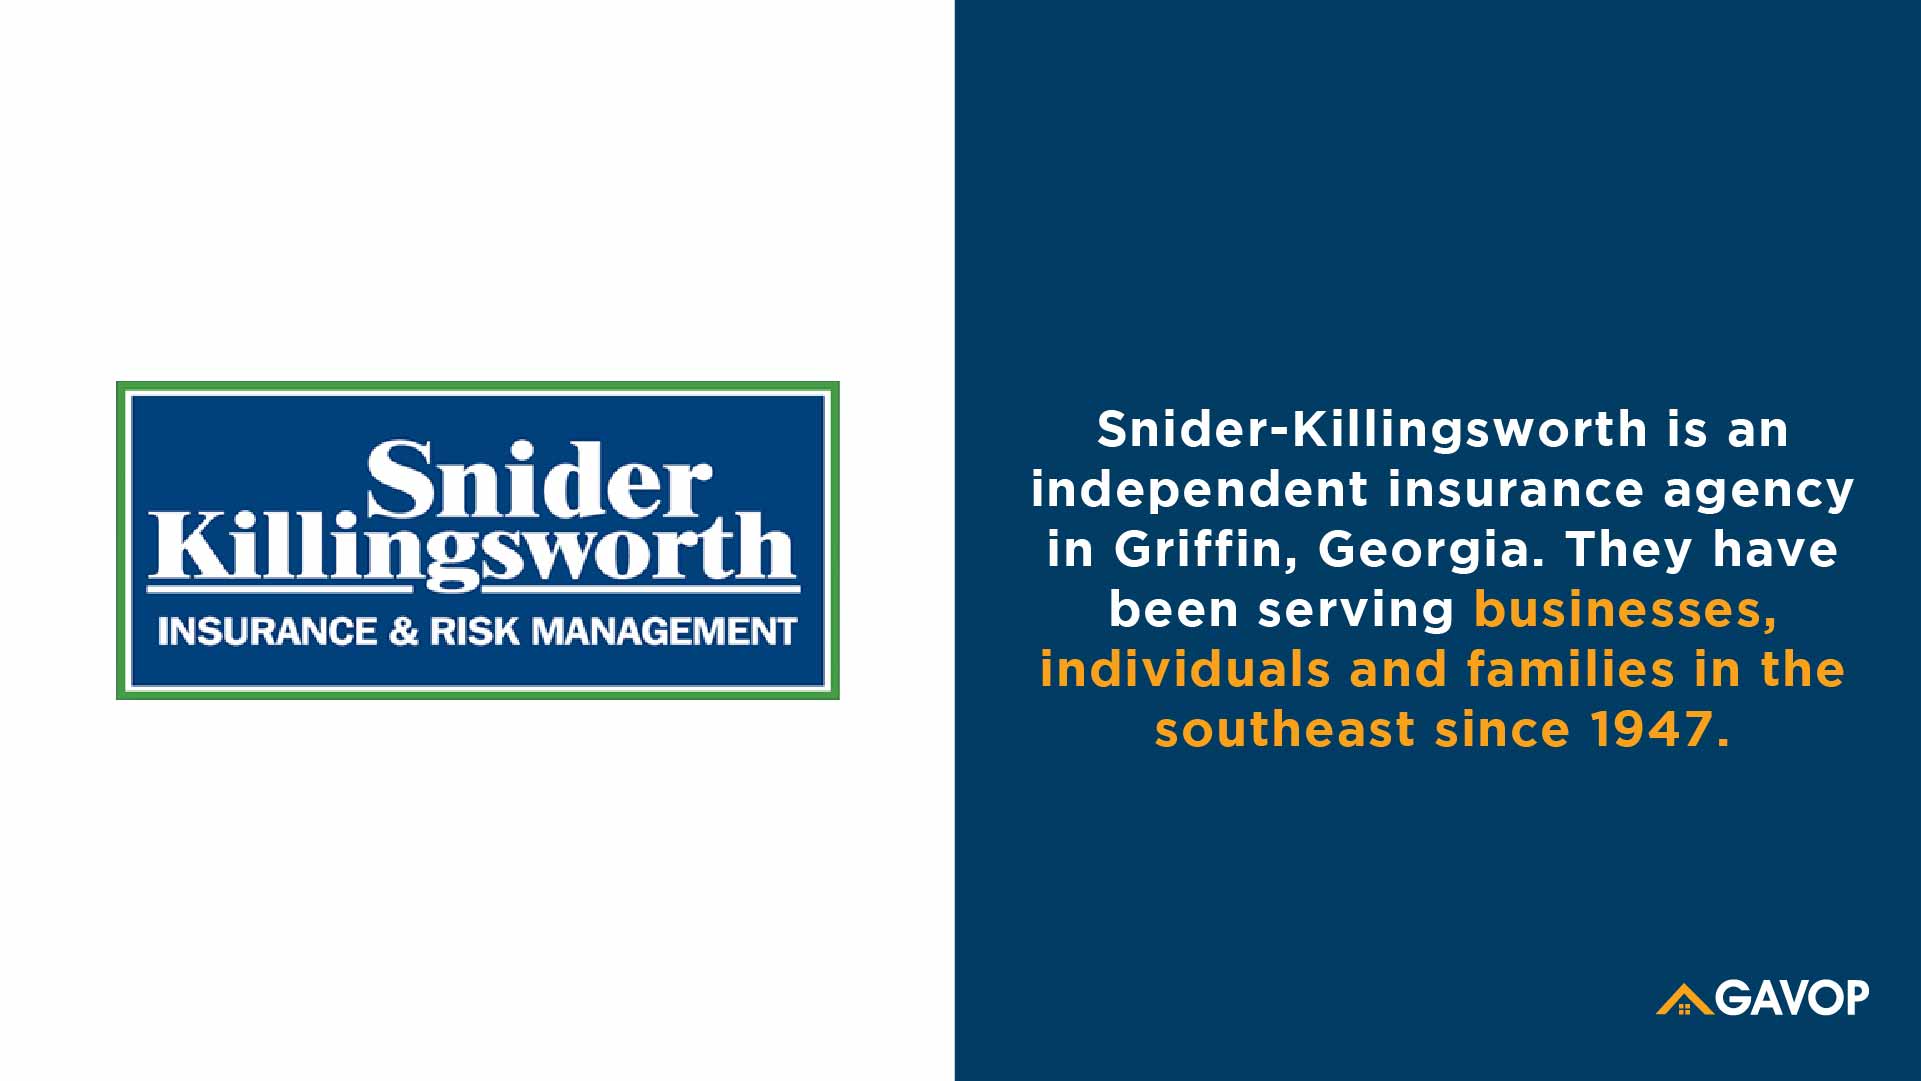 Snider-Killingsworth Insurance